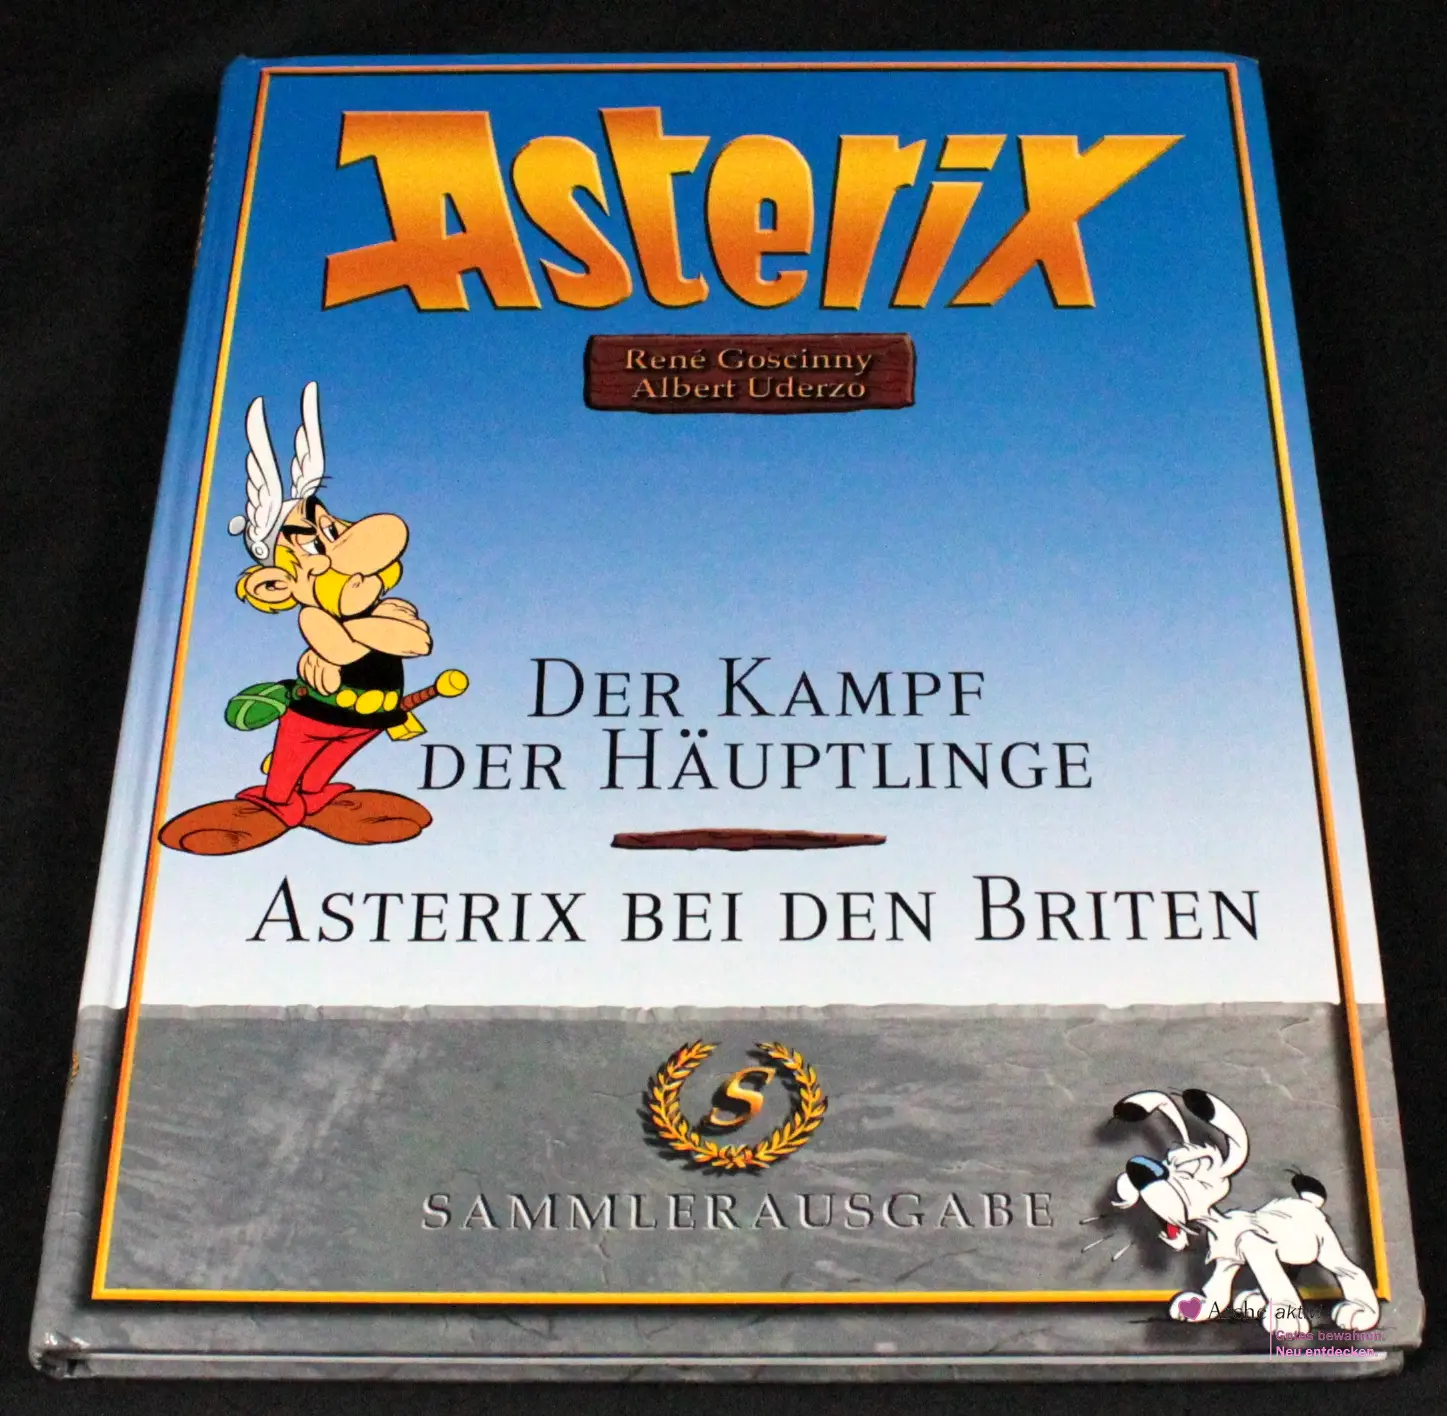 Asterix Sammlerausgabe - Der Kampf der Häuptlinge / Asterix bei den Briten, gebraucht